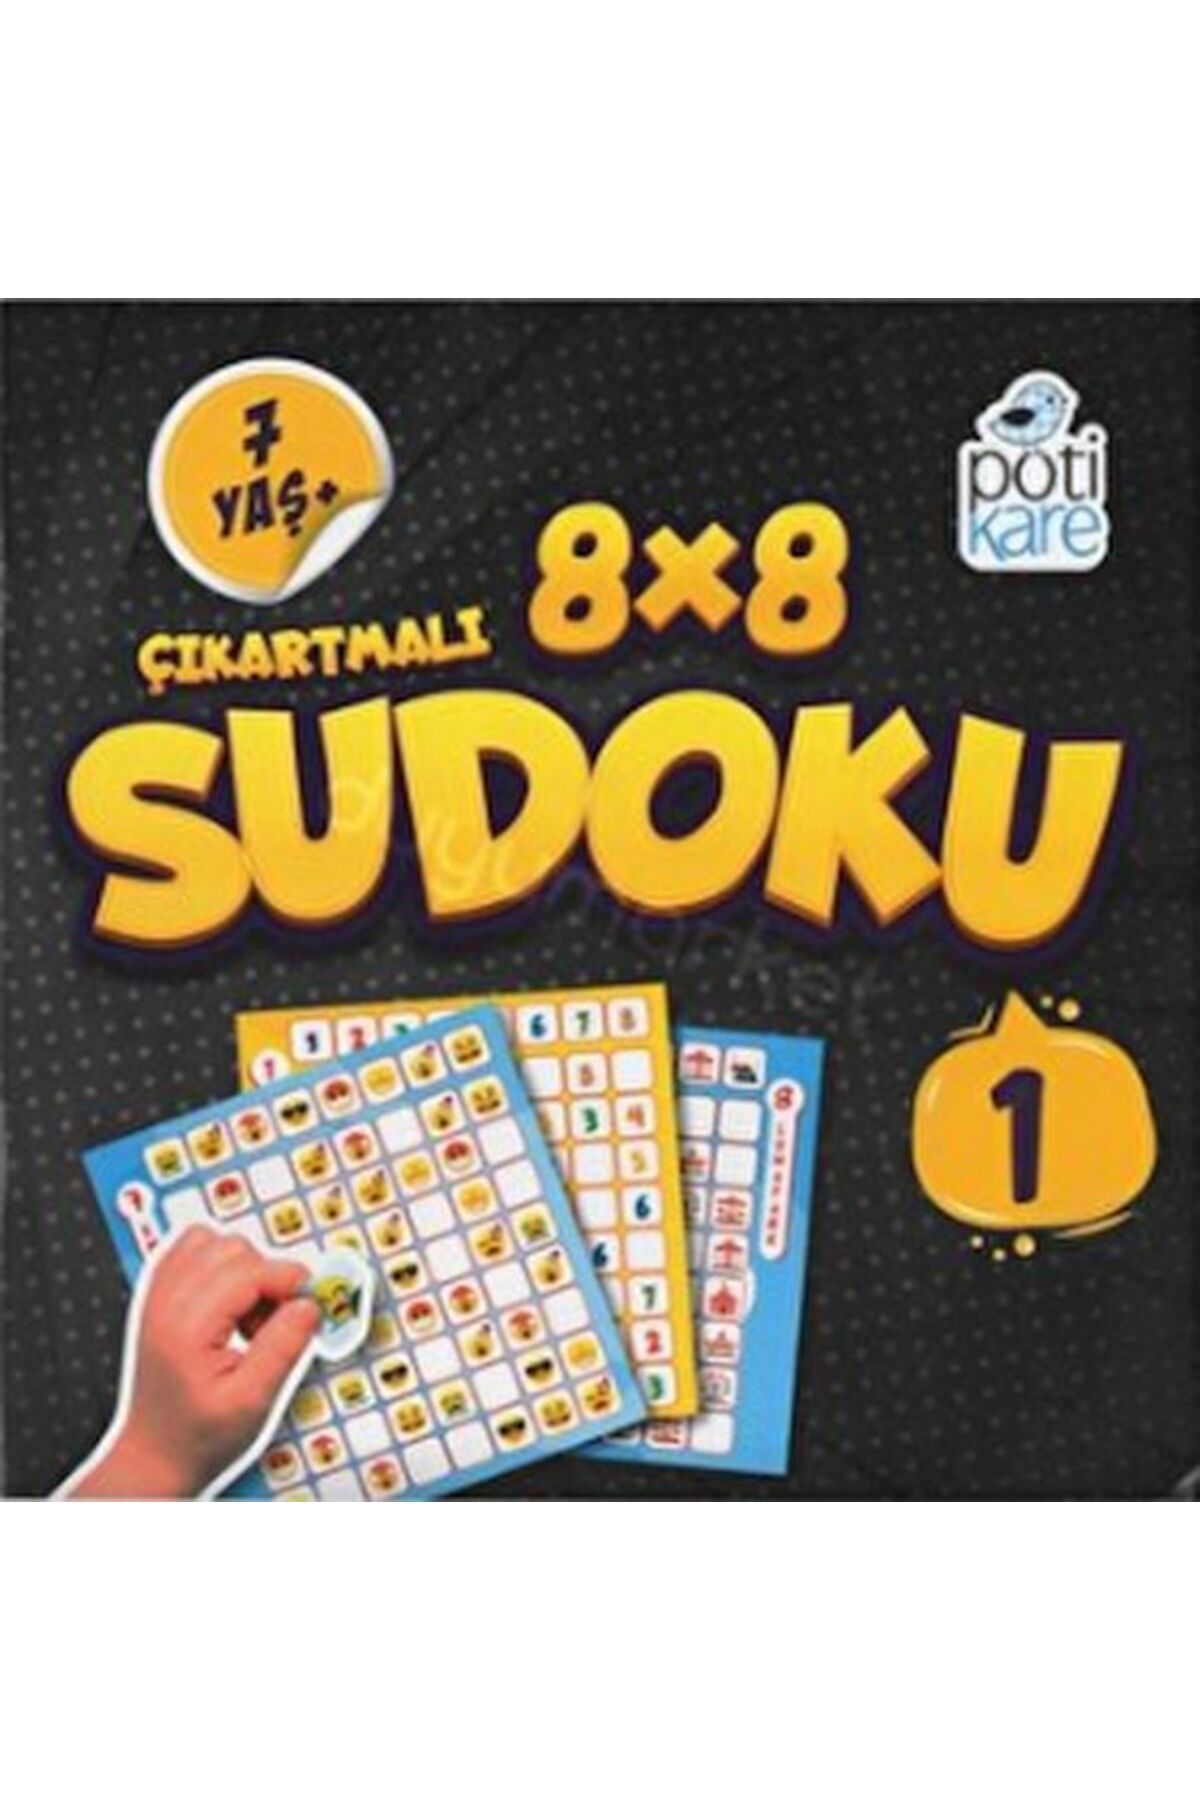 Pötikare Yayınları 8x8 Çıkartmalı Sudoku 7+ (1) Pötikare Yayınları (Korunaklı Poşetle)